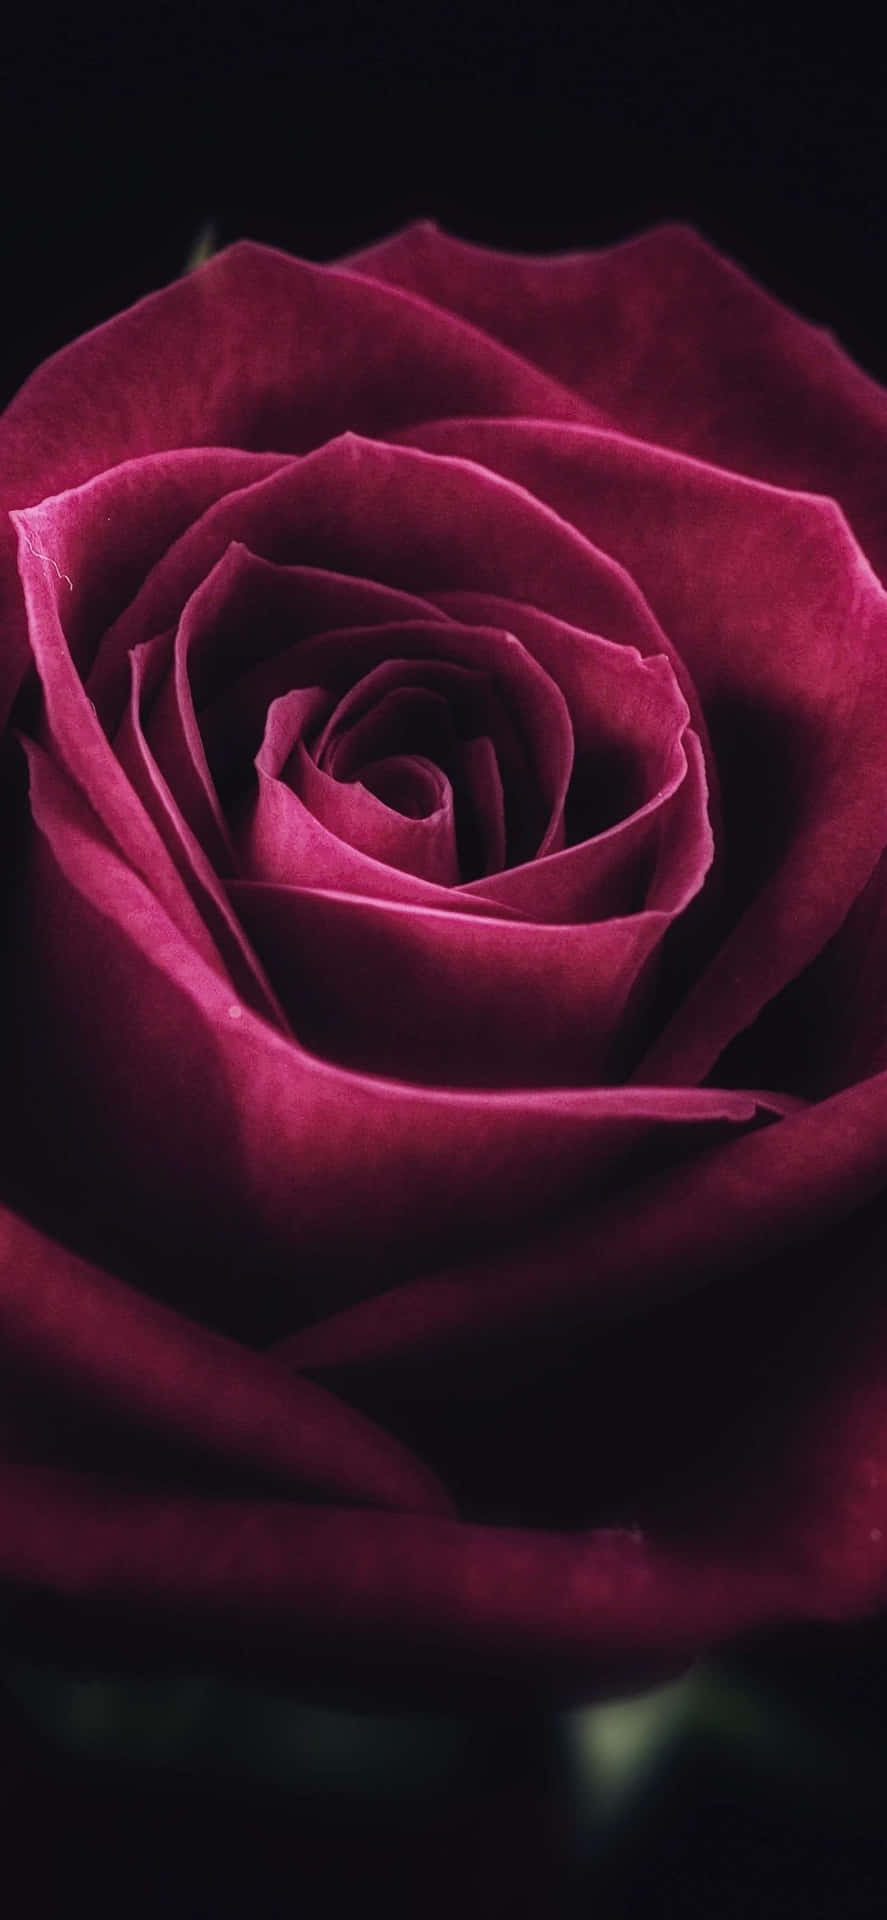 Caption: Delicate Rose Petal in Serene Surroundings Wallpaper